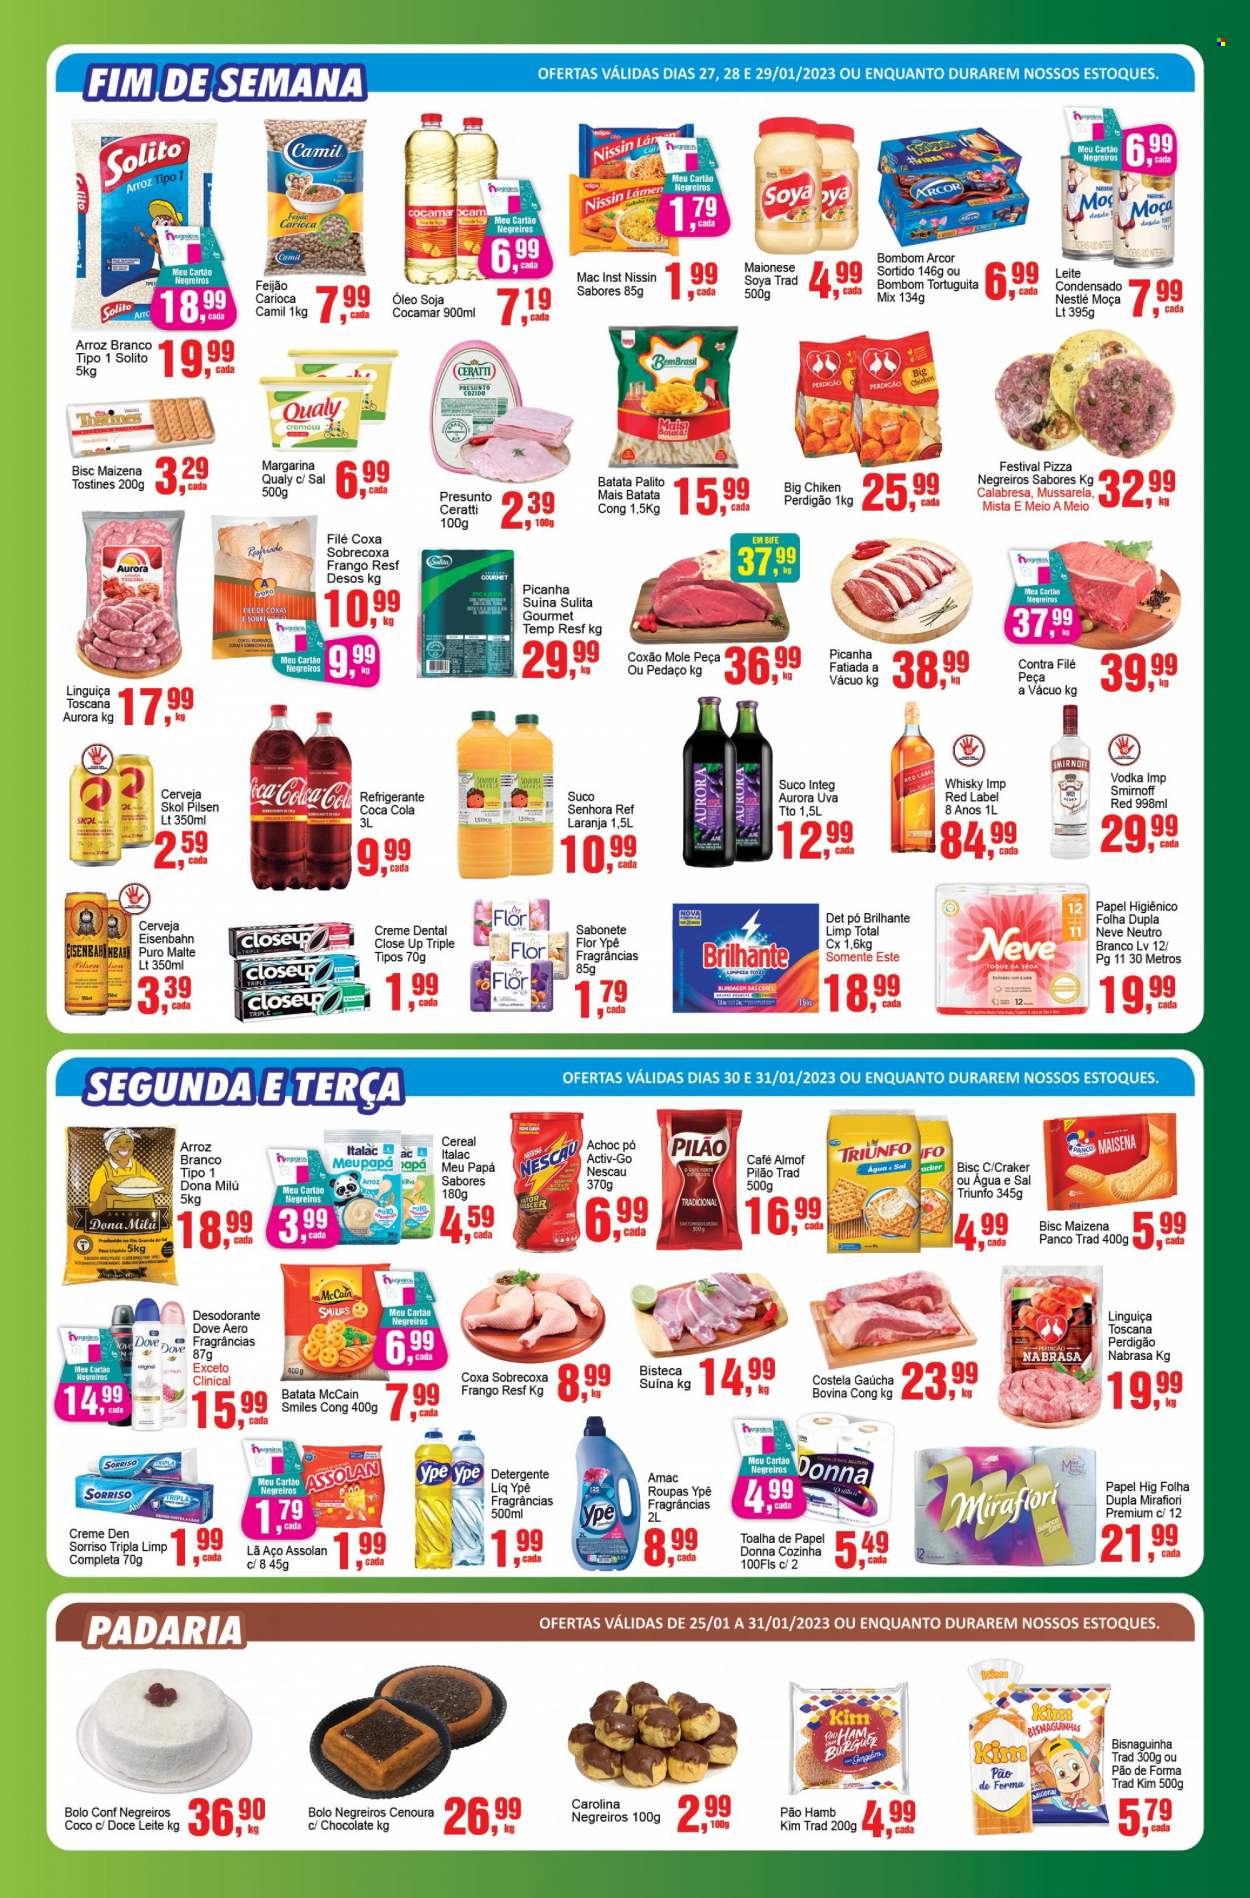 Encarte Supermercado Negreiros  - 25.01.2023 - 31.01.2023.